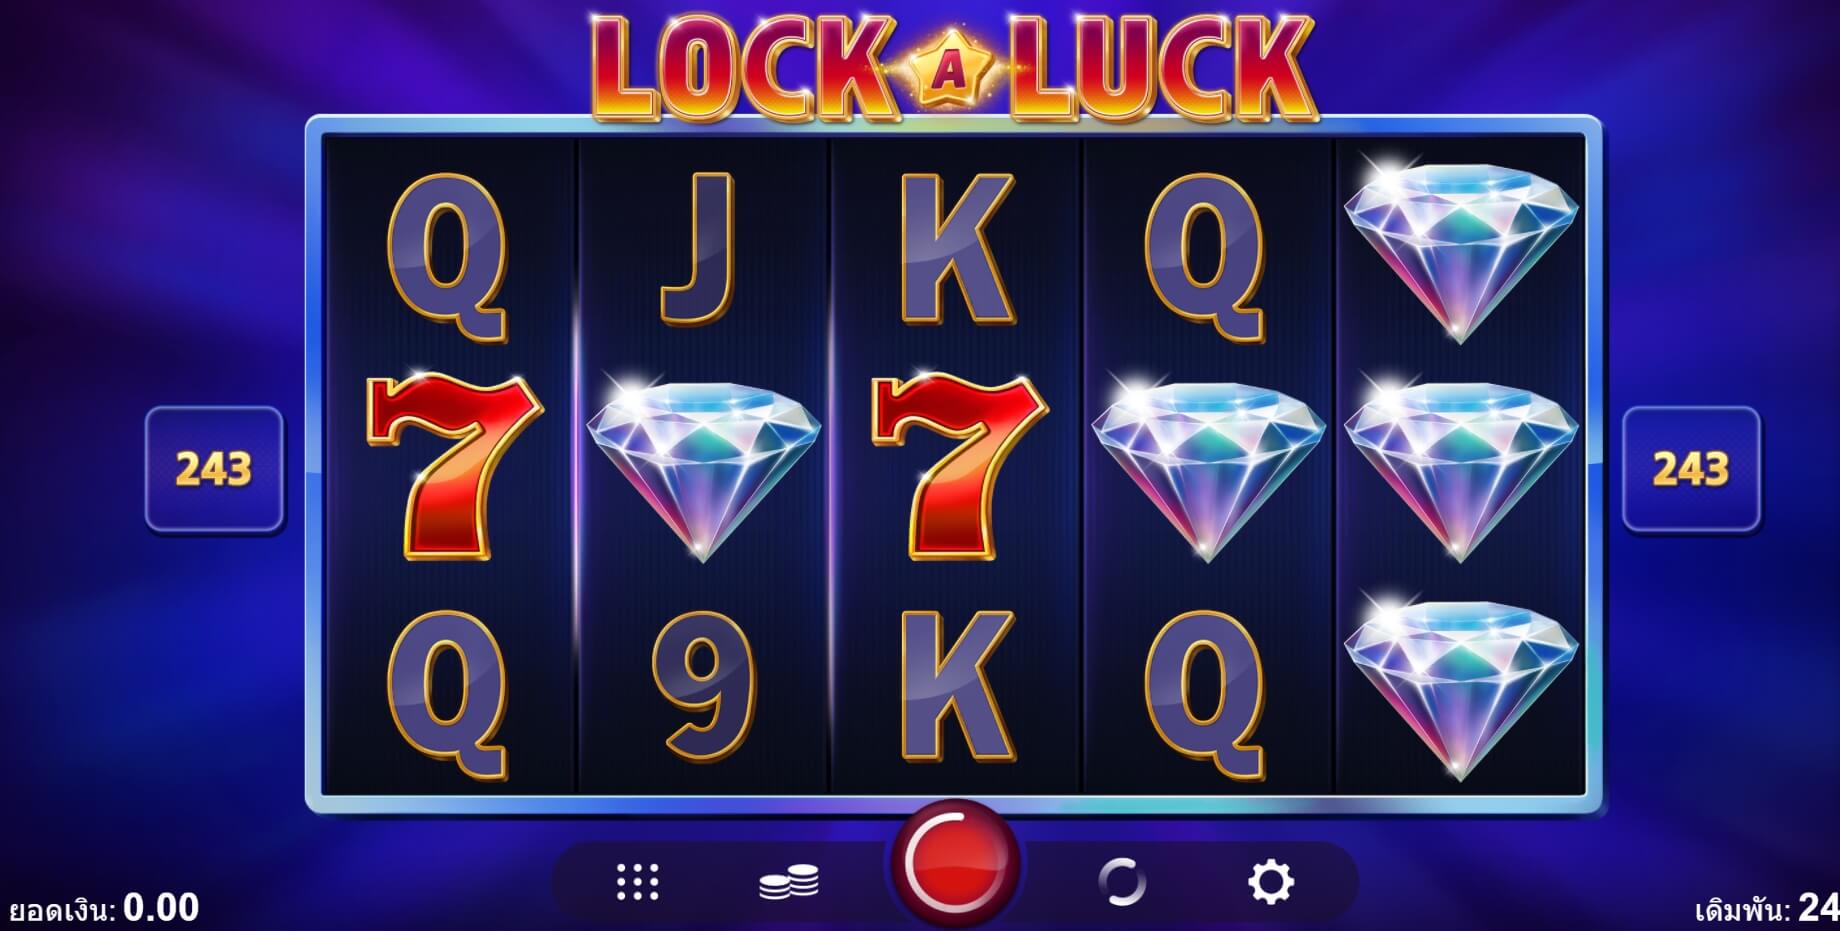 Lock-a-Luck UPG Slot PG Slot